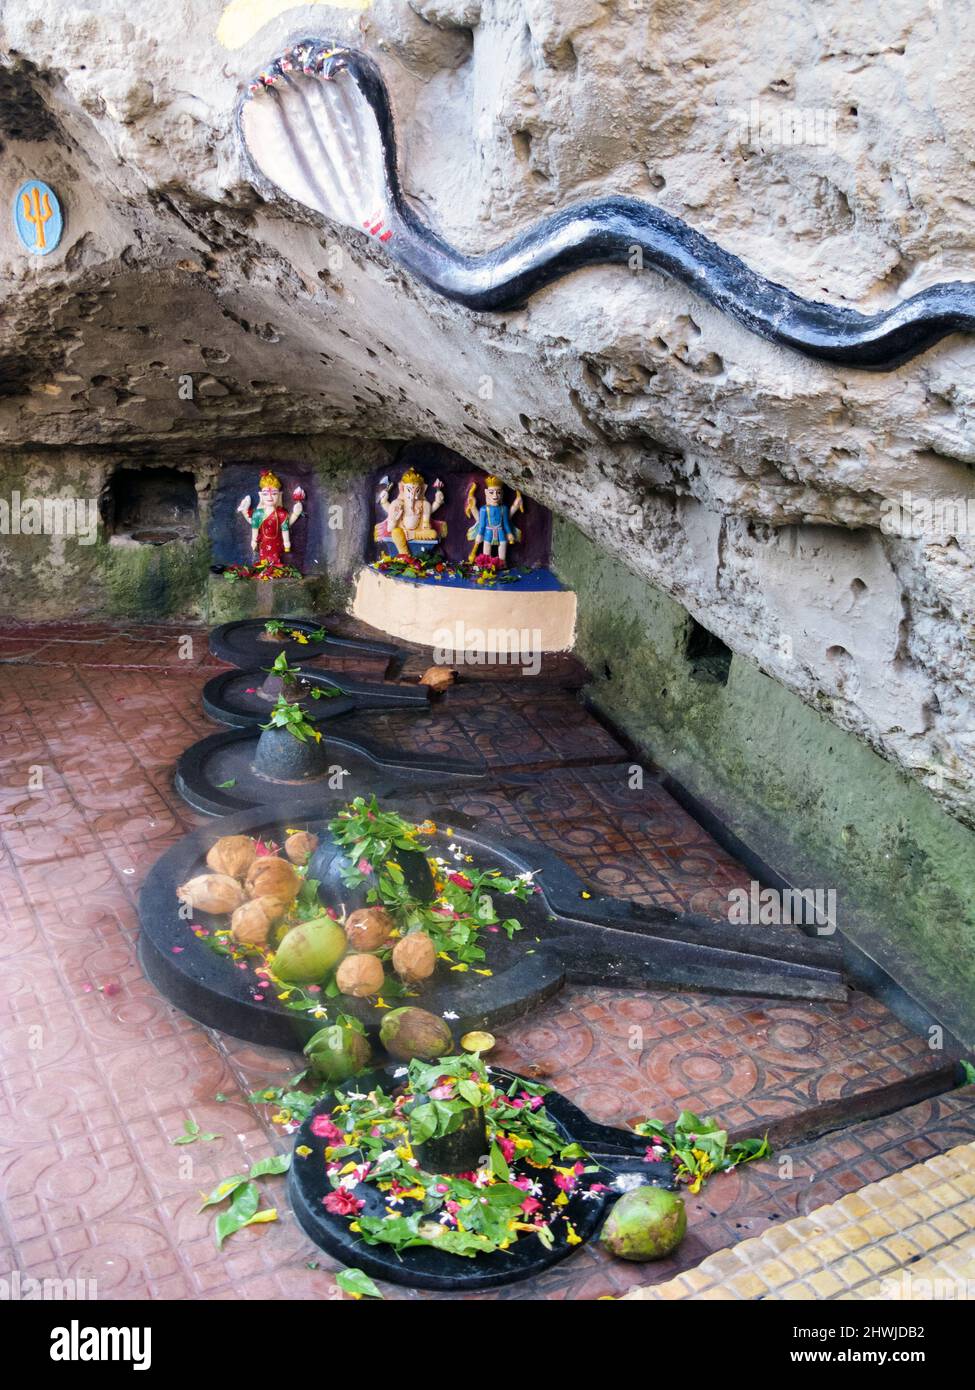 Inde, Gujarat, île de DIU. Gangeshwar Mahadev Shiva temple. Shivlinjams avec offrandes à Shiva lavé par la mer à marée haute. Banque D'Images